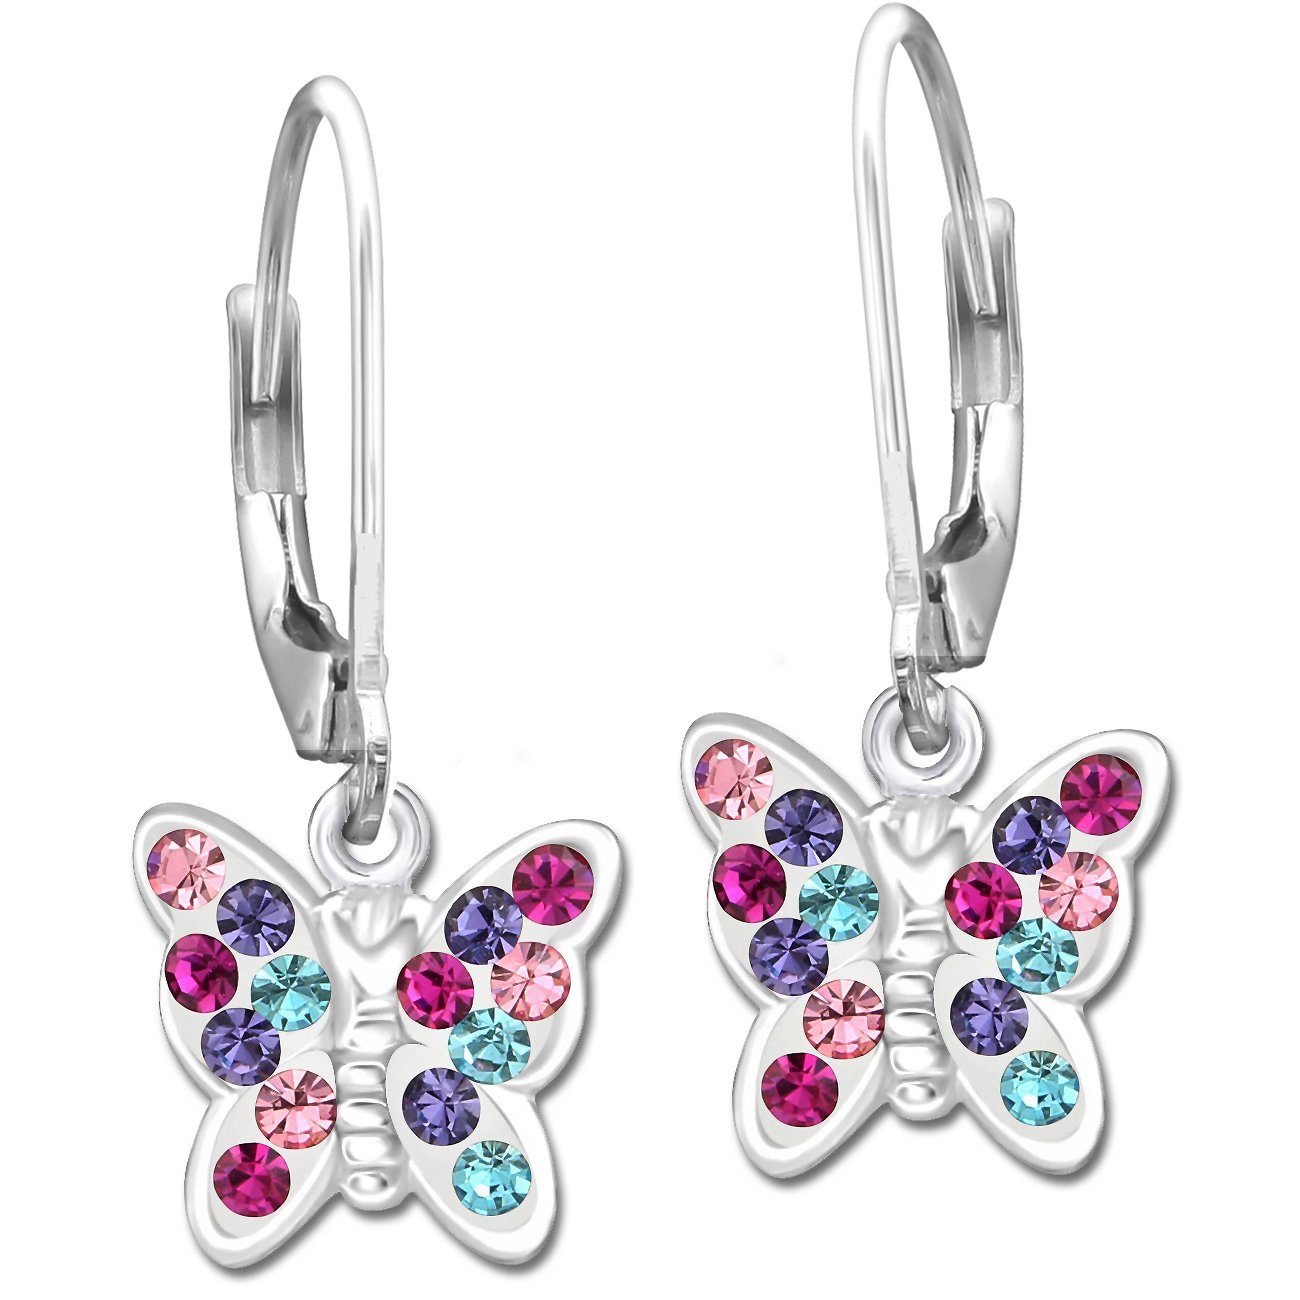 Limana Paar Ohrhänger Mädchen Kinder hängende Ohrringe echt 925 Sterling Silber Schmetterling K649o bunt